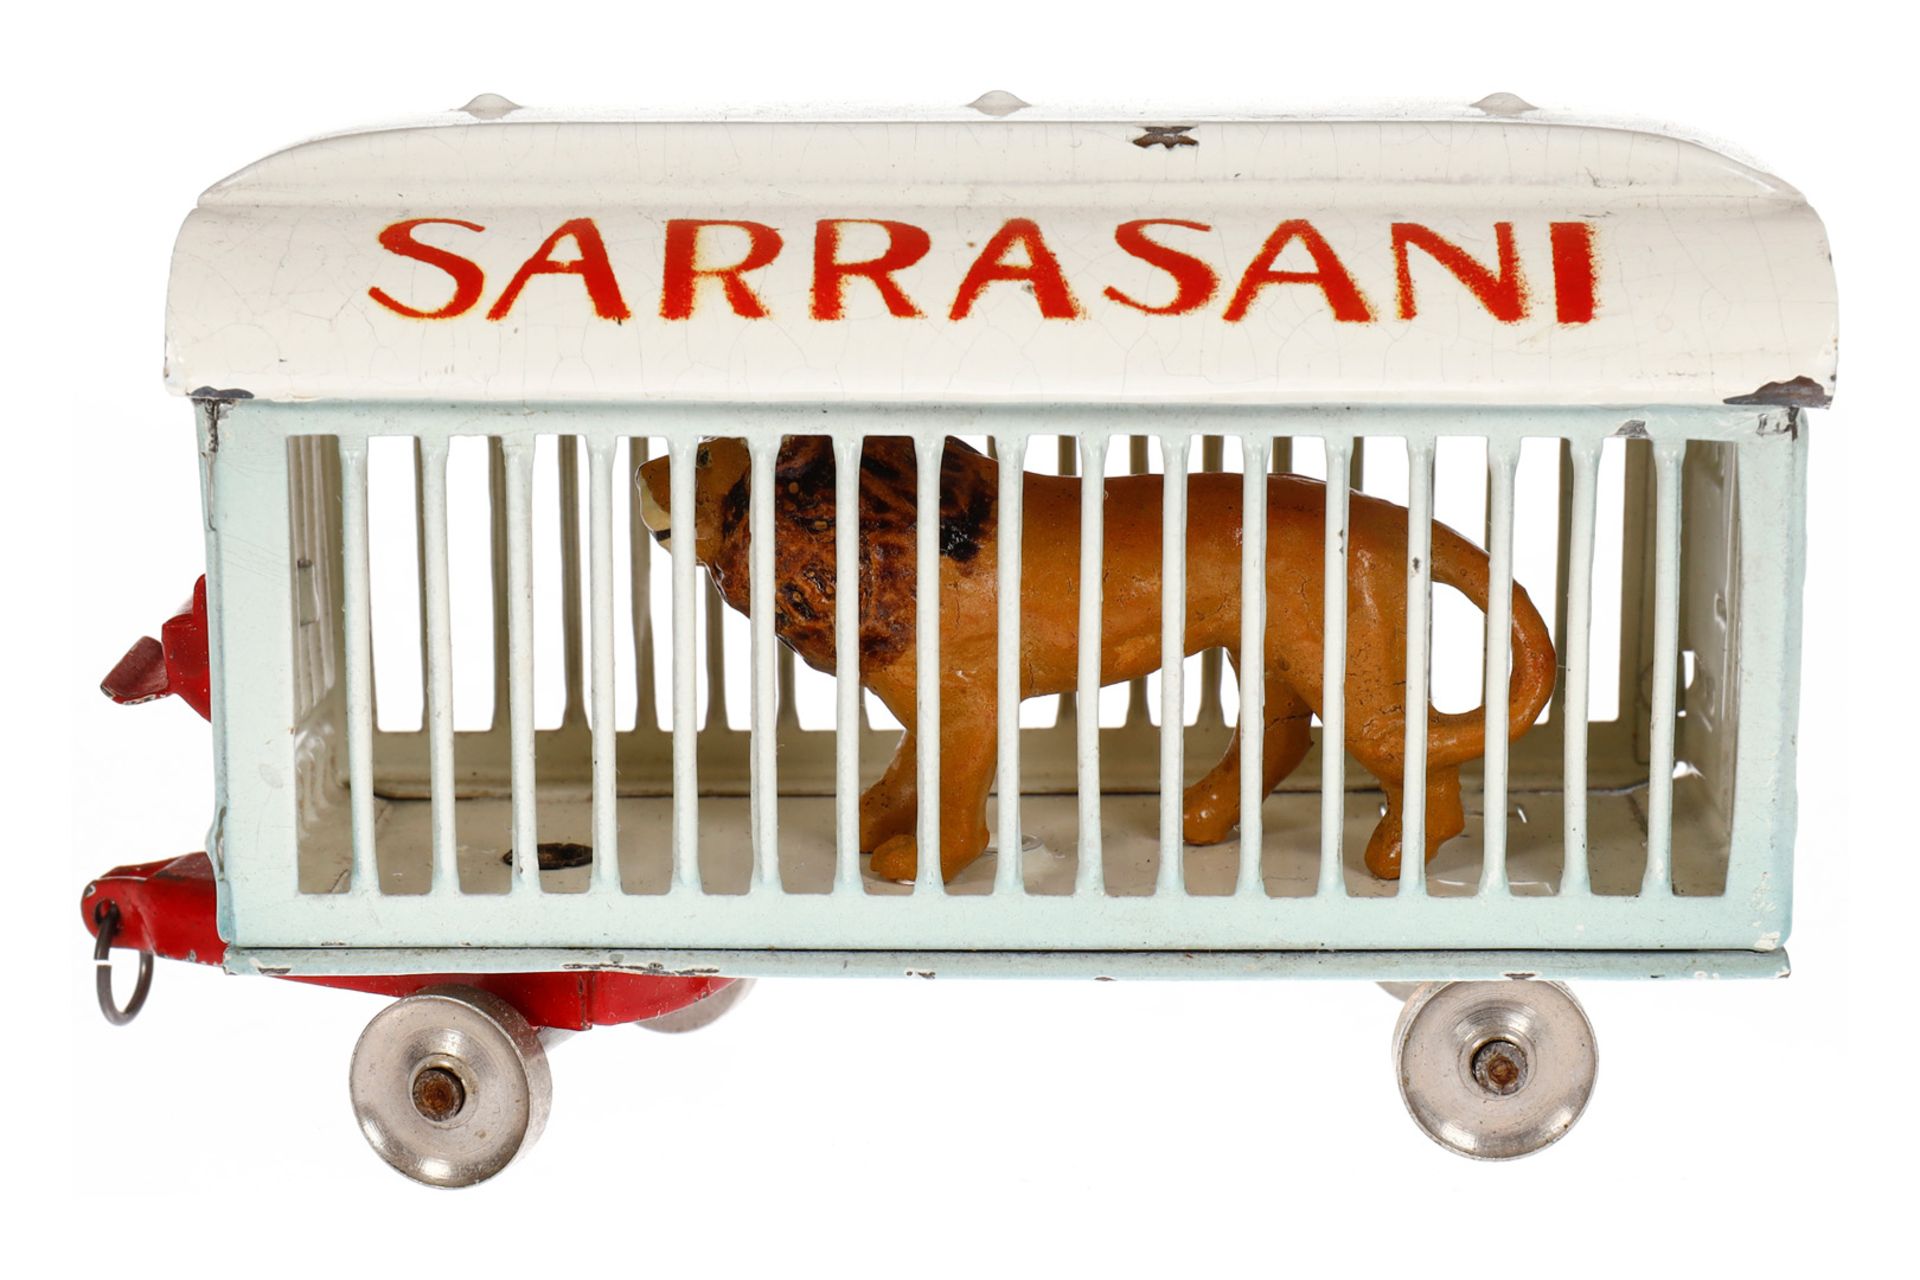 Märklin Sarrasani Tierwagen, HL, mit Löwe, LS und gealterter Lack, L 9, sonst Z 2